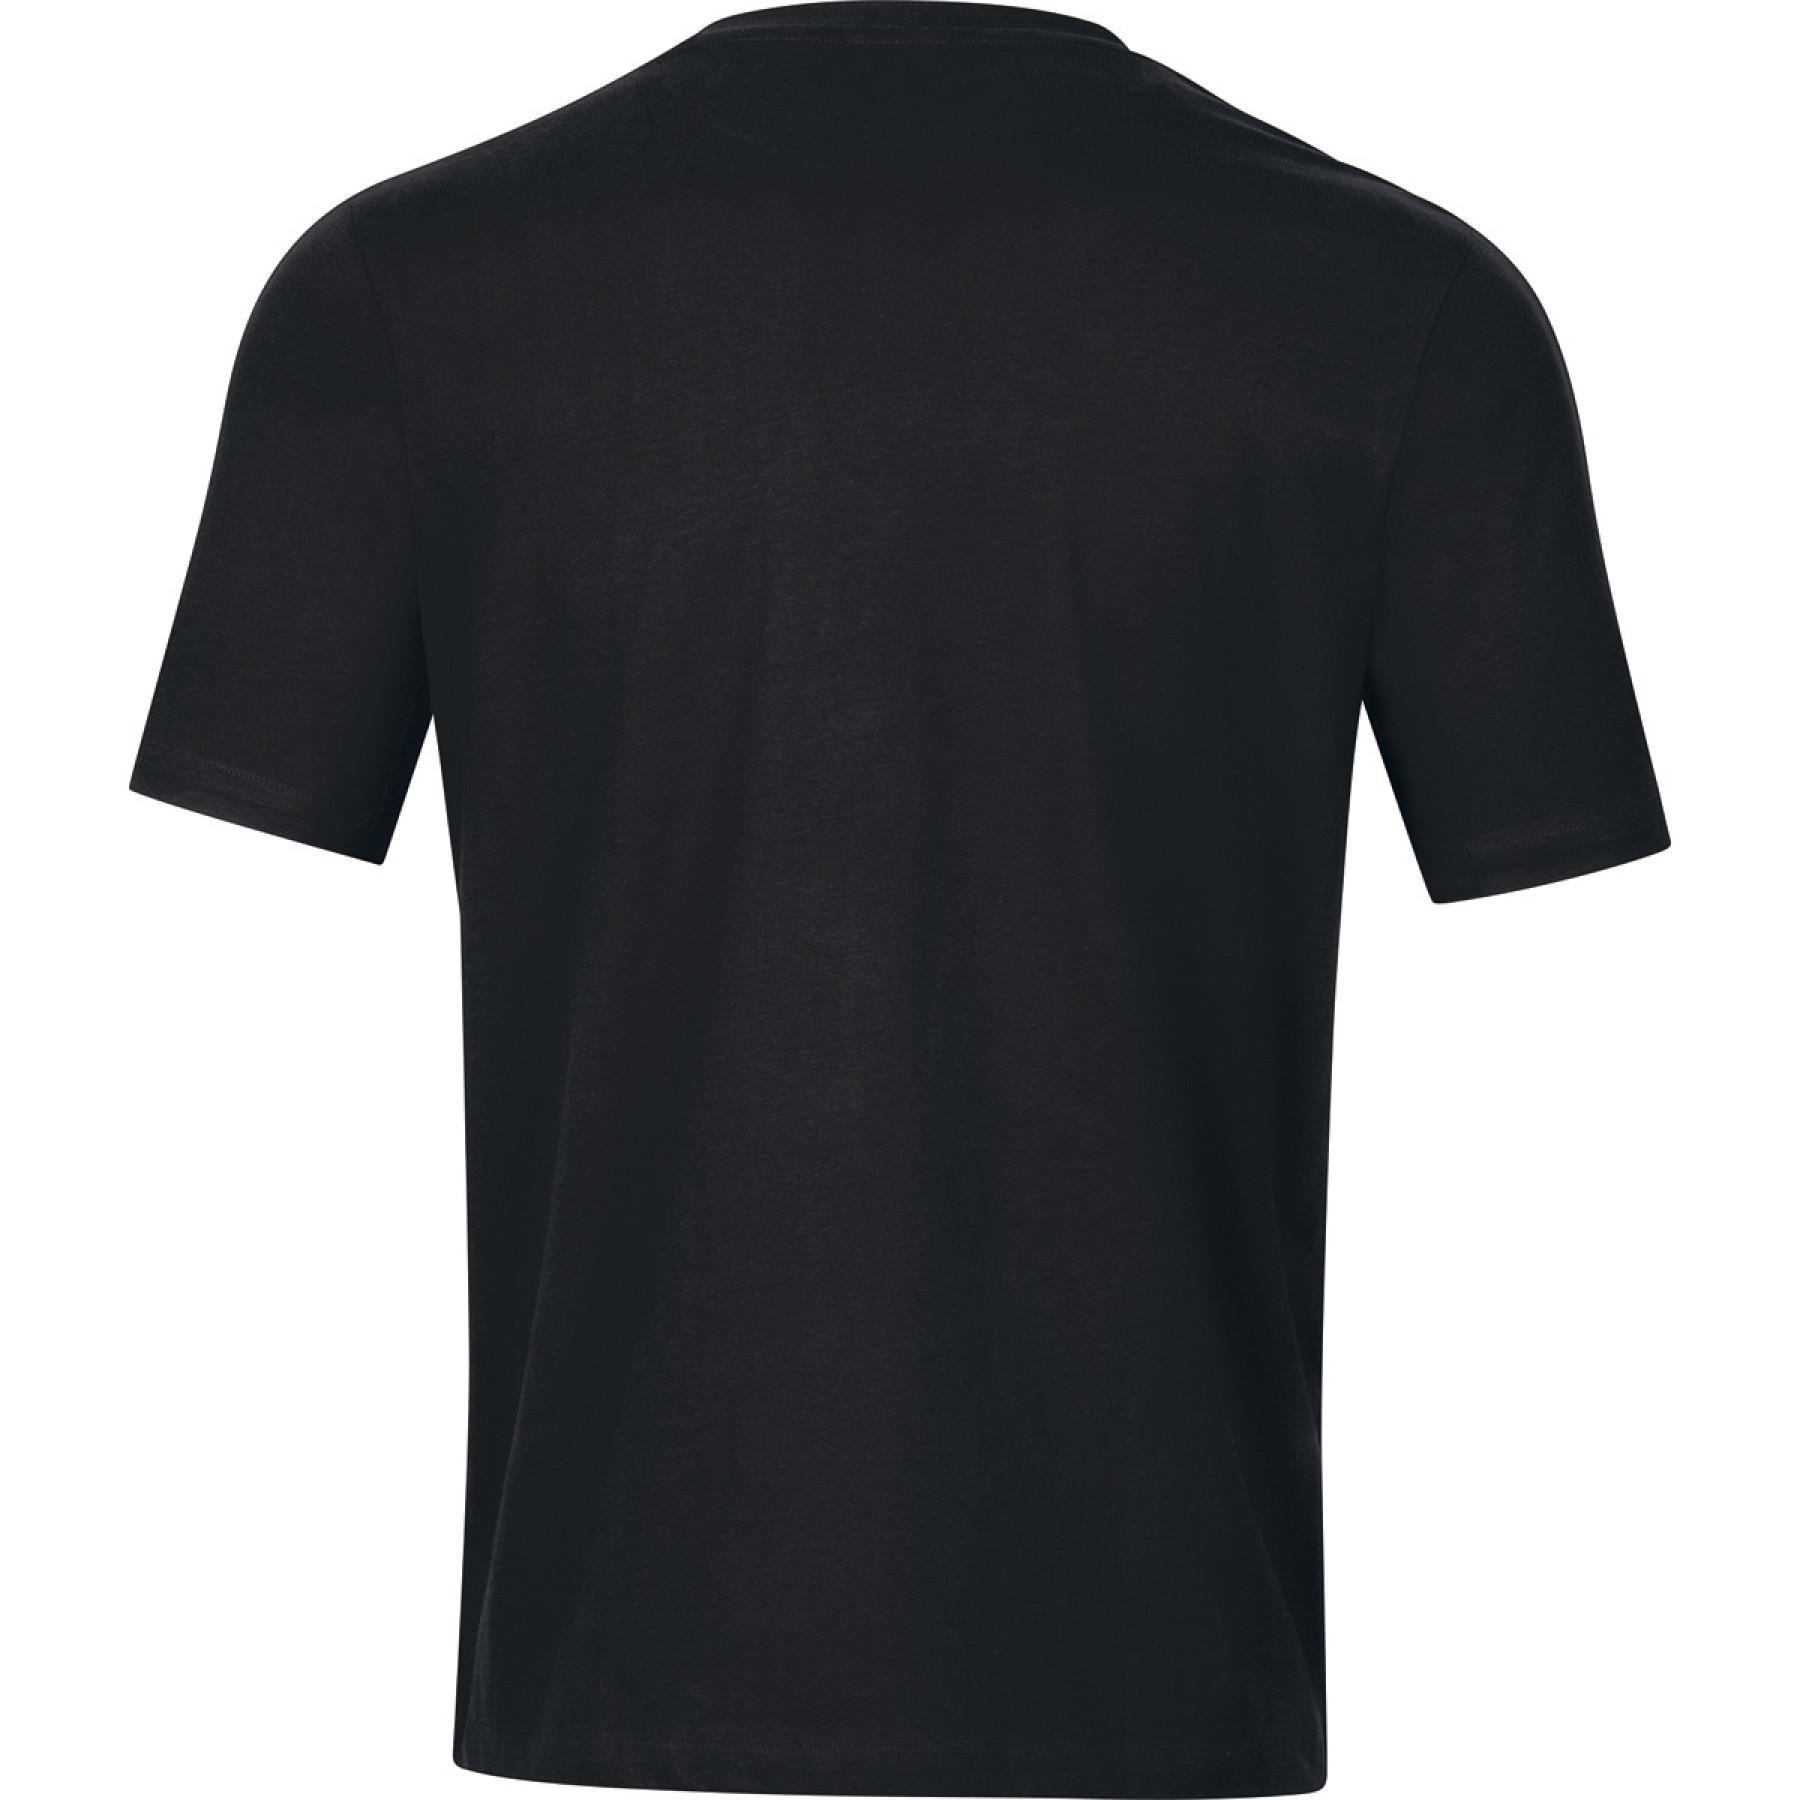 T-shirt Jako Base - T-shirts & polo shirts - Men's wear - Handball wear